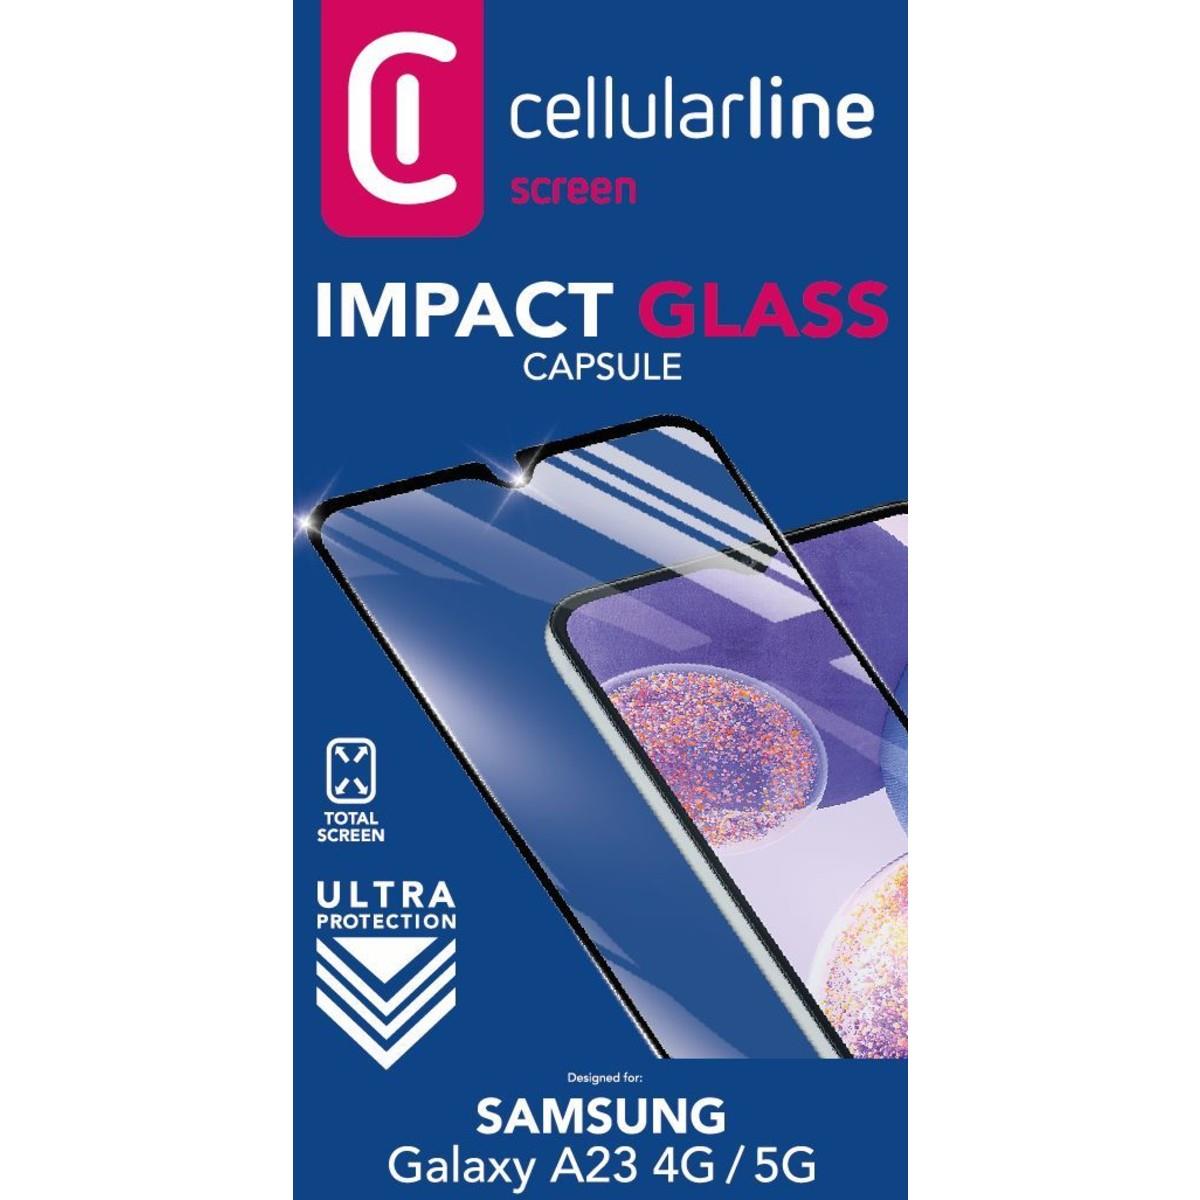 Schutzglas IMPACT GLASS CAPSULE für Samsung Galaxy A23 4G/5G